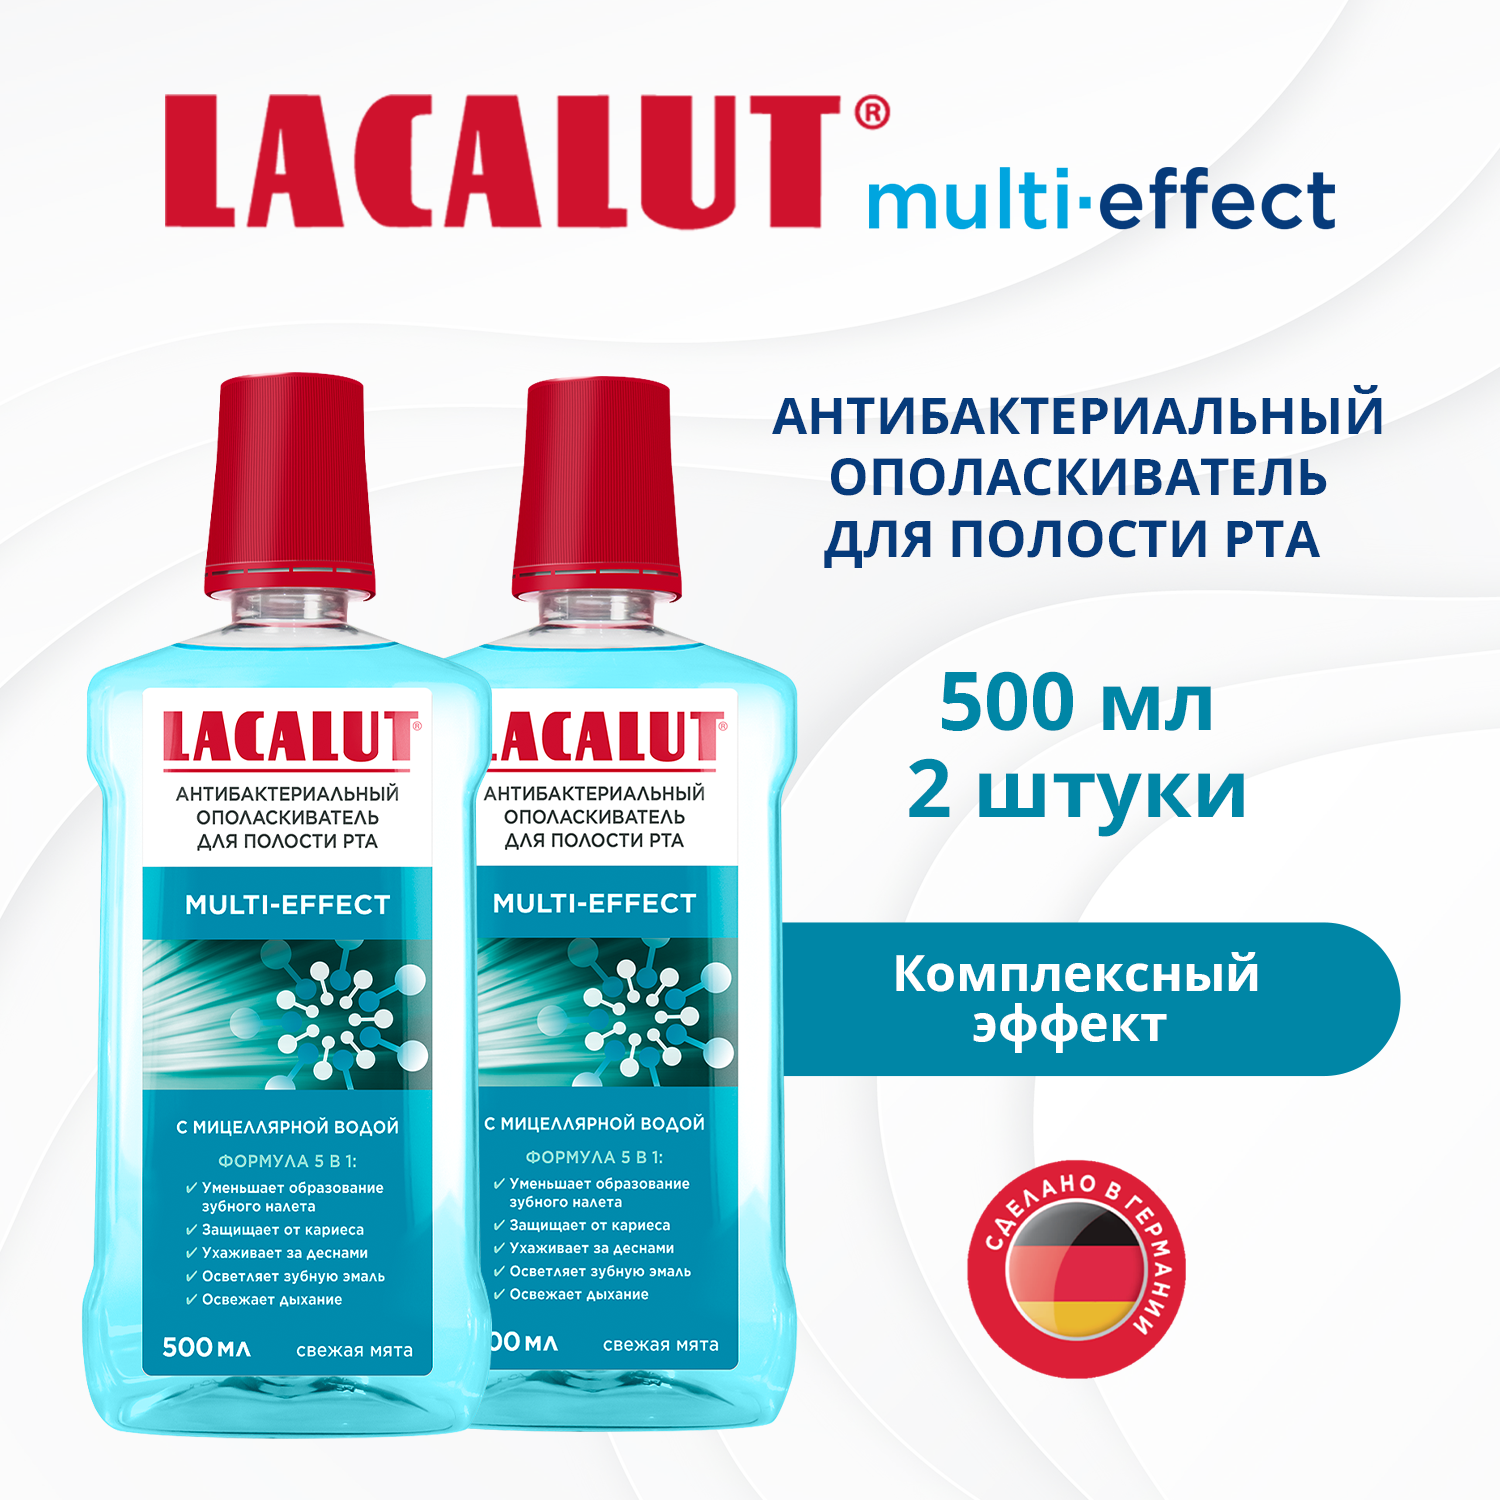 Lacalut Multi-effect антибактериальный ополаскиватель для полости рта, 500 мл (Lacalut, ) - фото №1